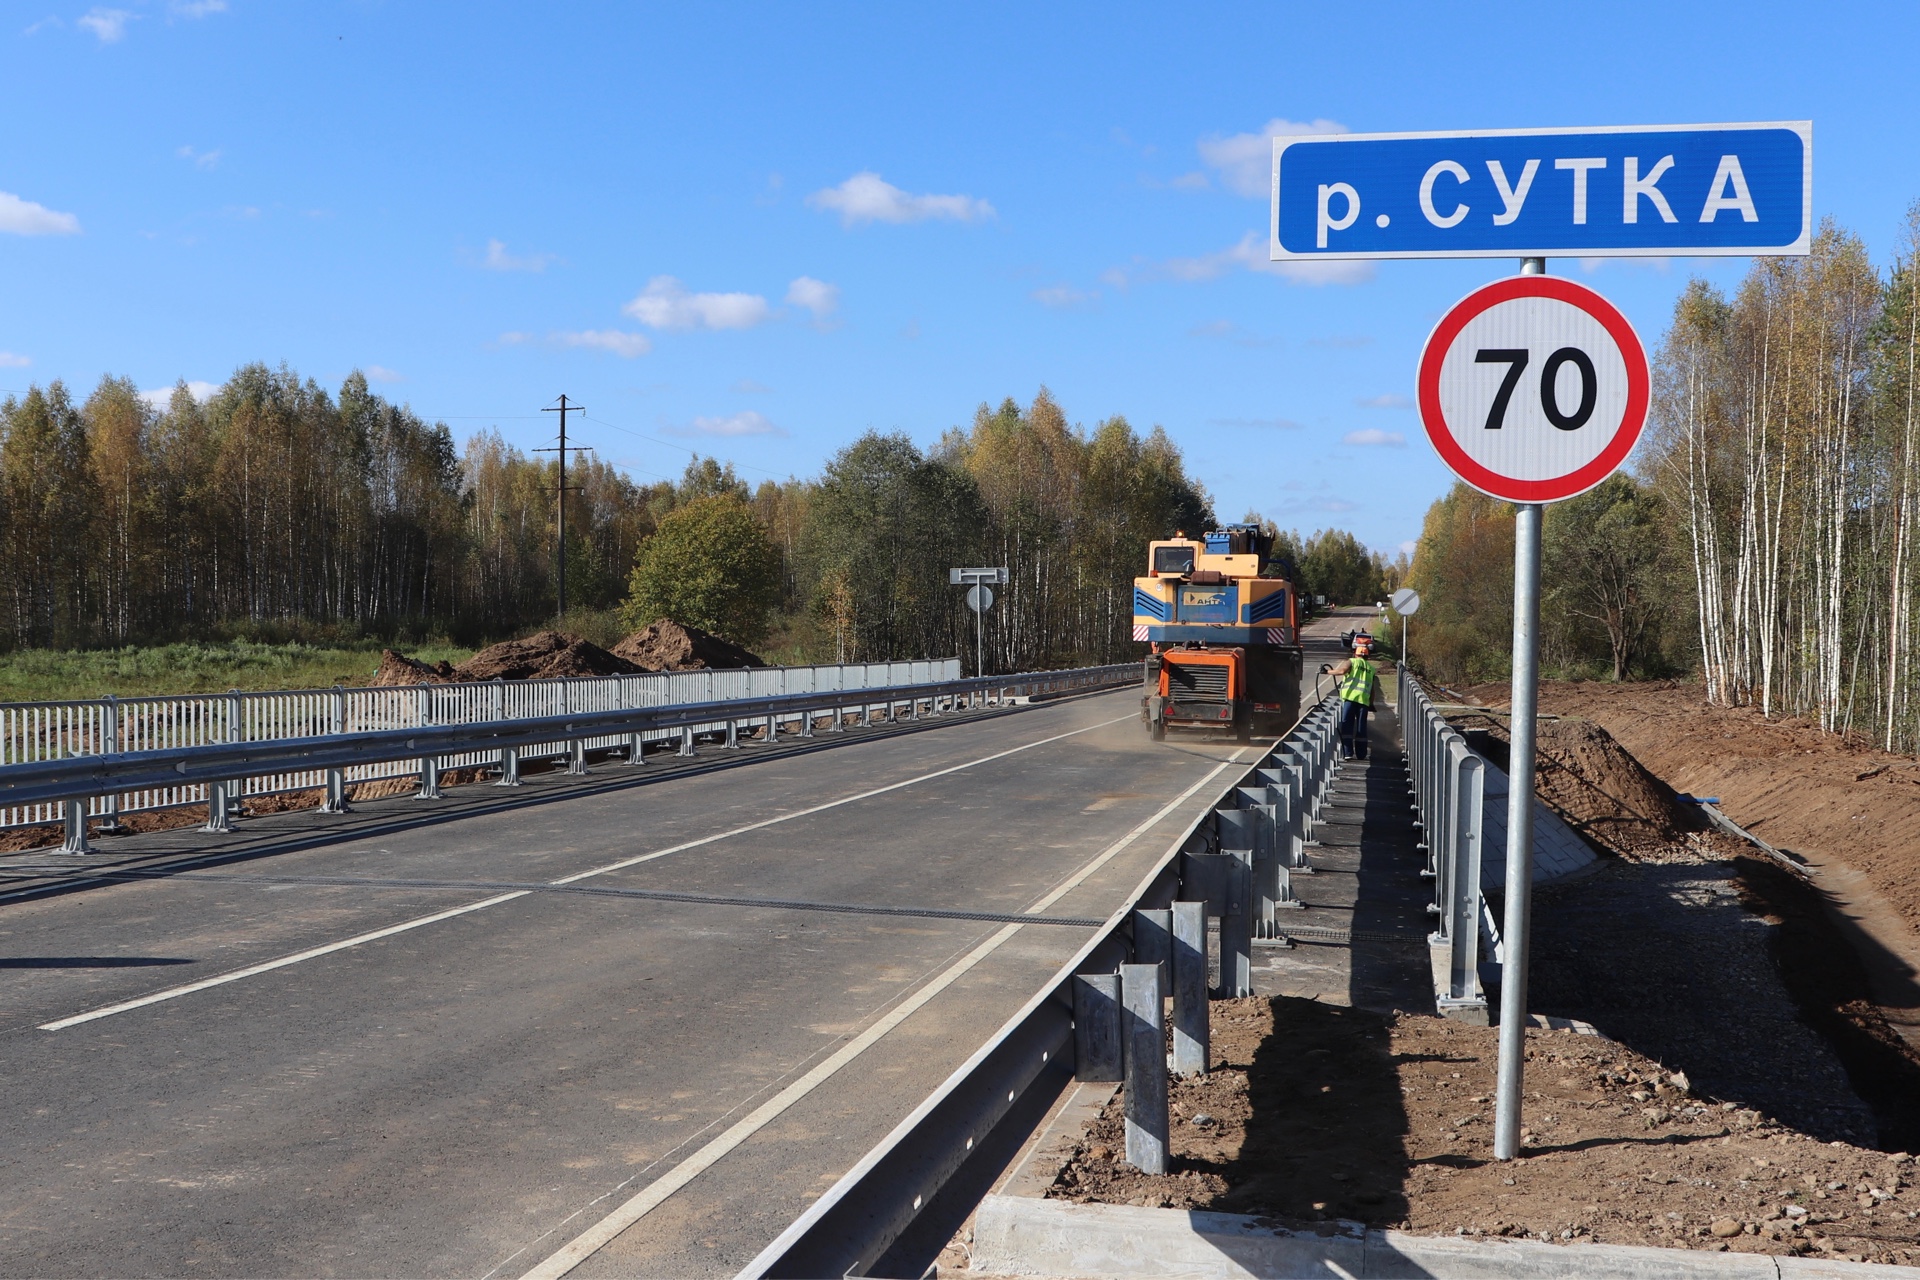 Новый мост через реку Сутку построили в Ярославской области